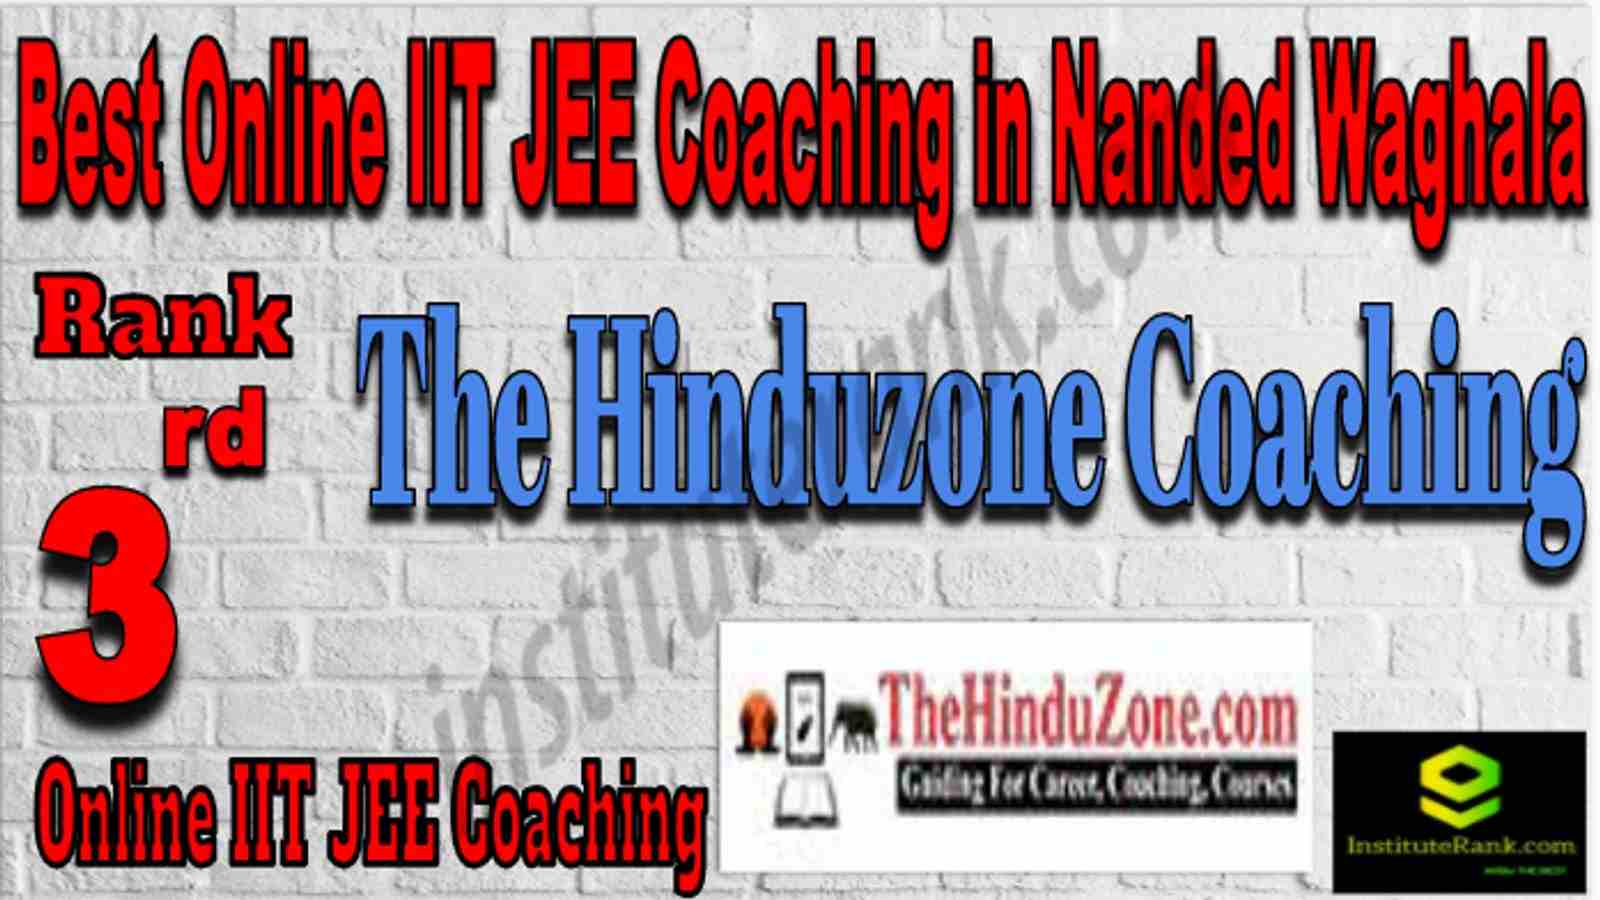 Rank 3 Best Online IIT JEE Coaching in Nanded Waghala